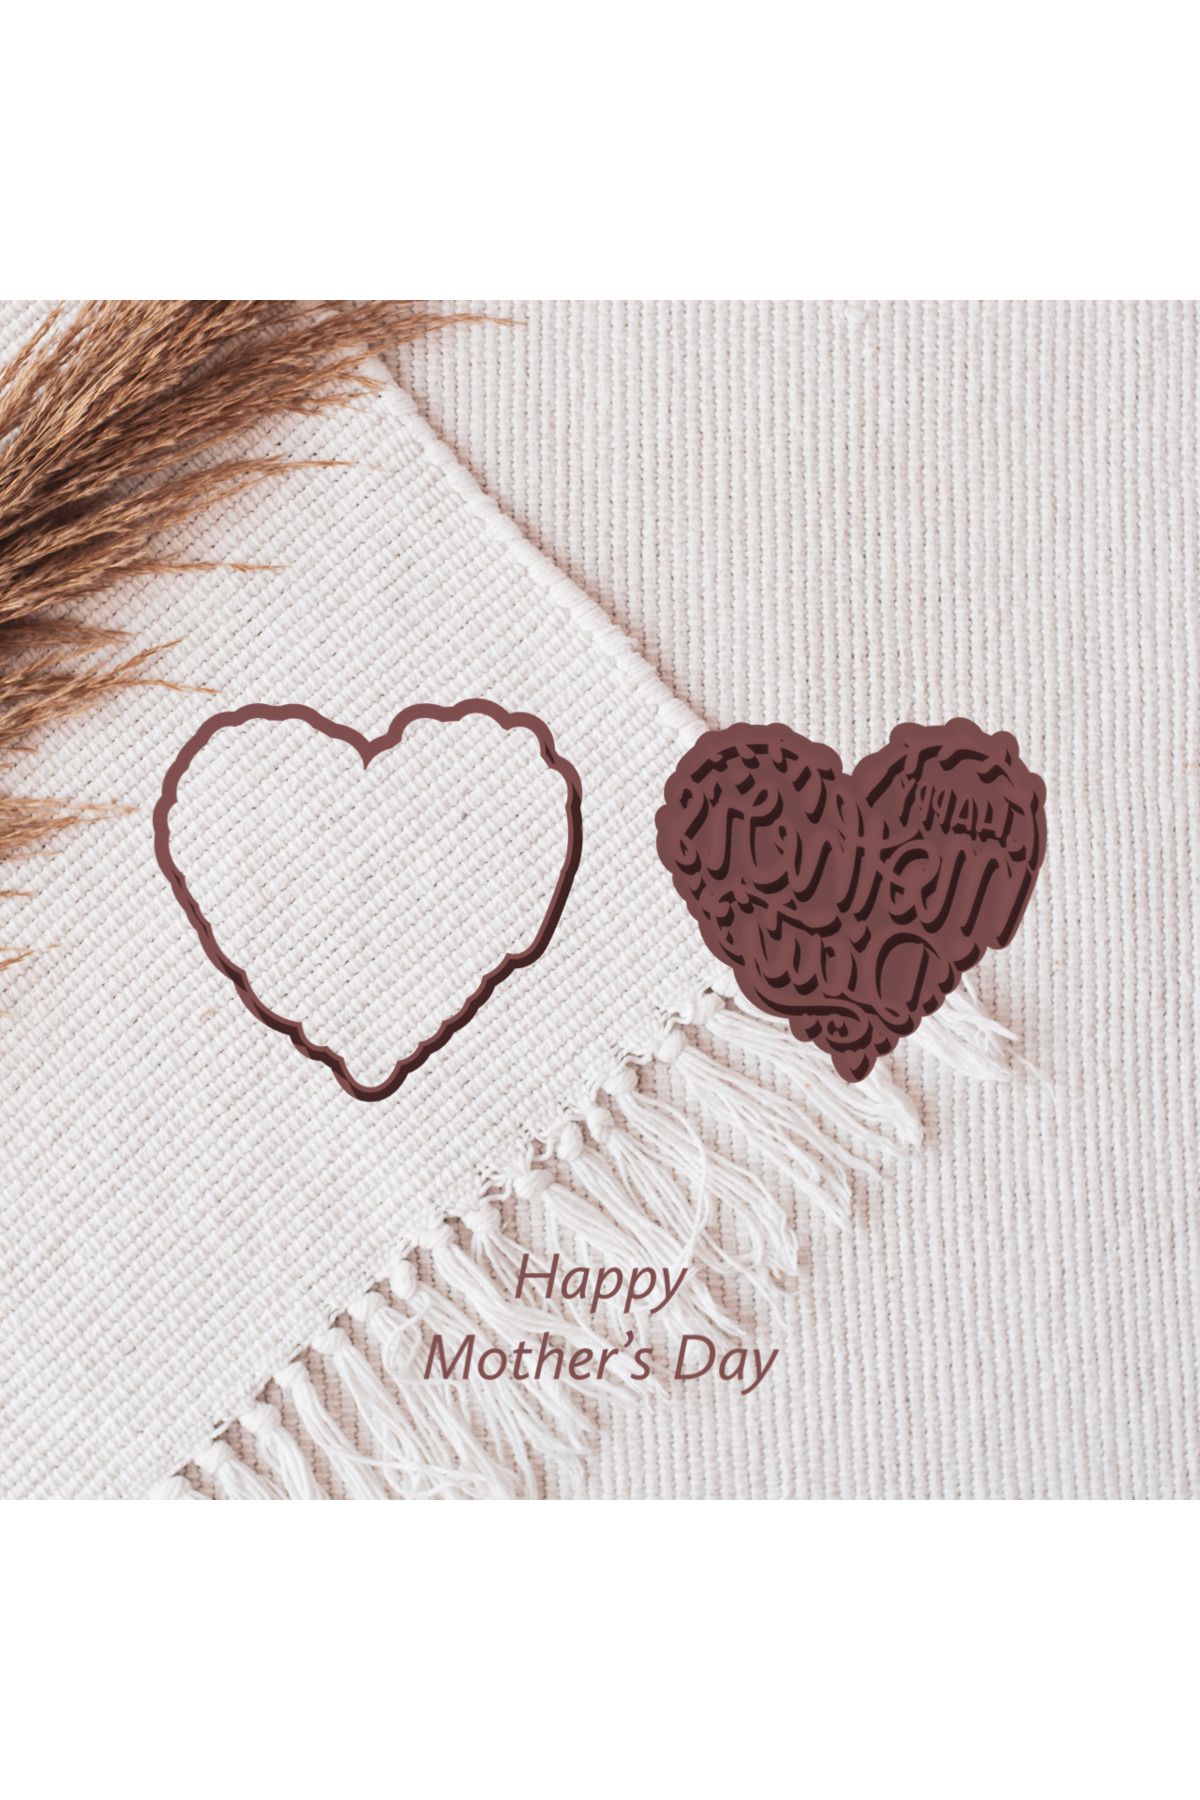 plastik atölyesi Anneler Günü Kurabiye Kalıbı/Seramik Klıp/Polimerkil Kalıp/Mothers Day Cookie Cutters